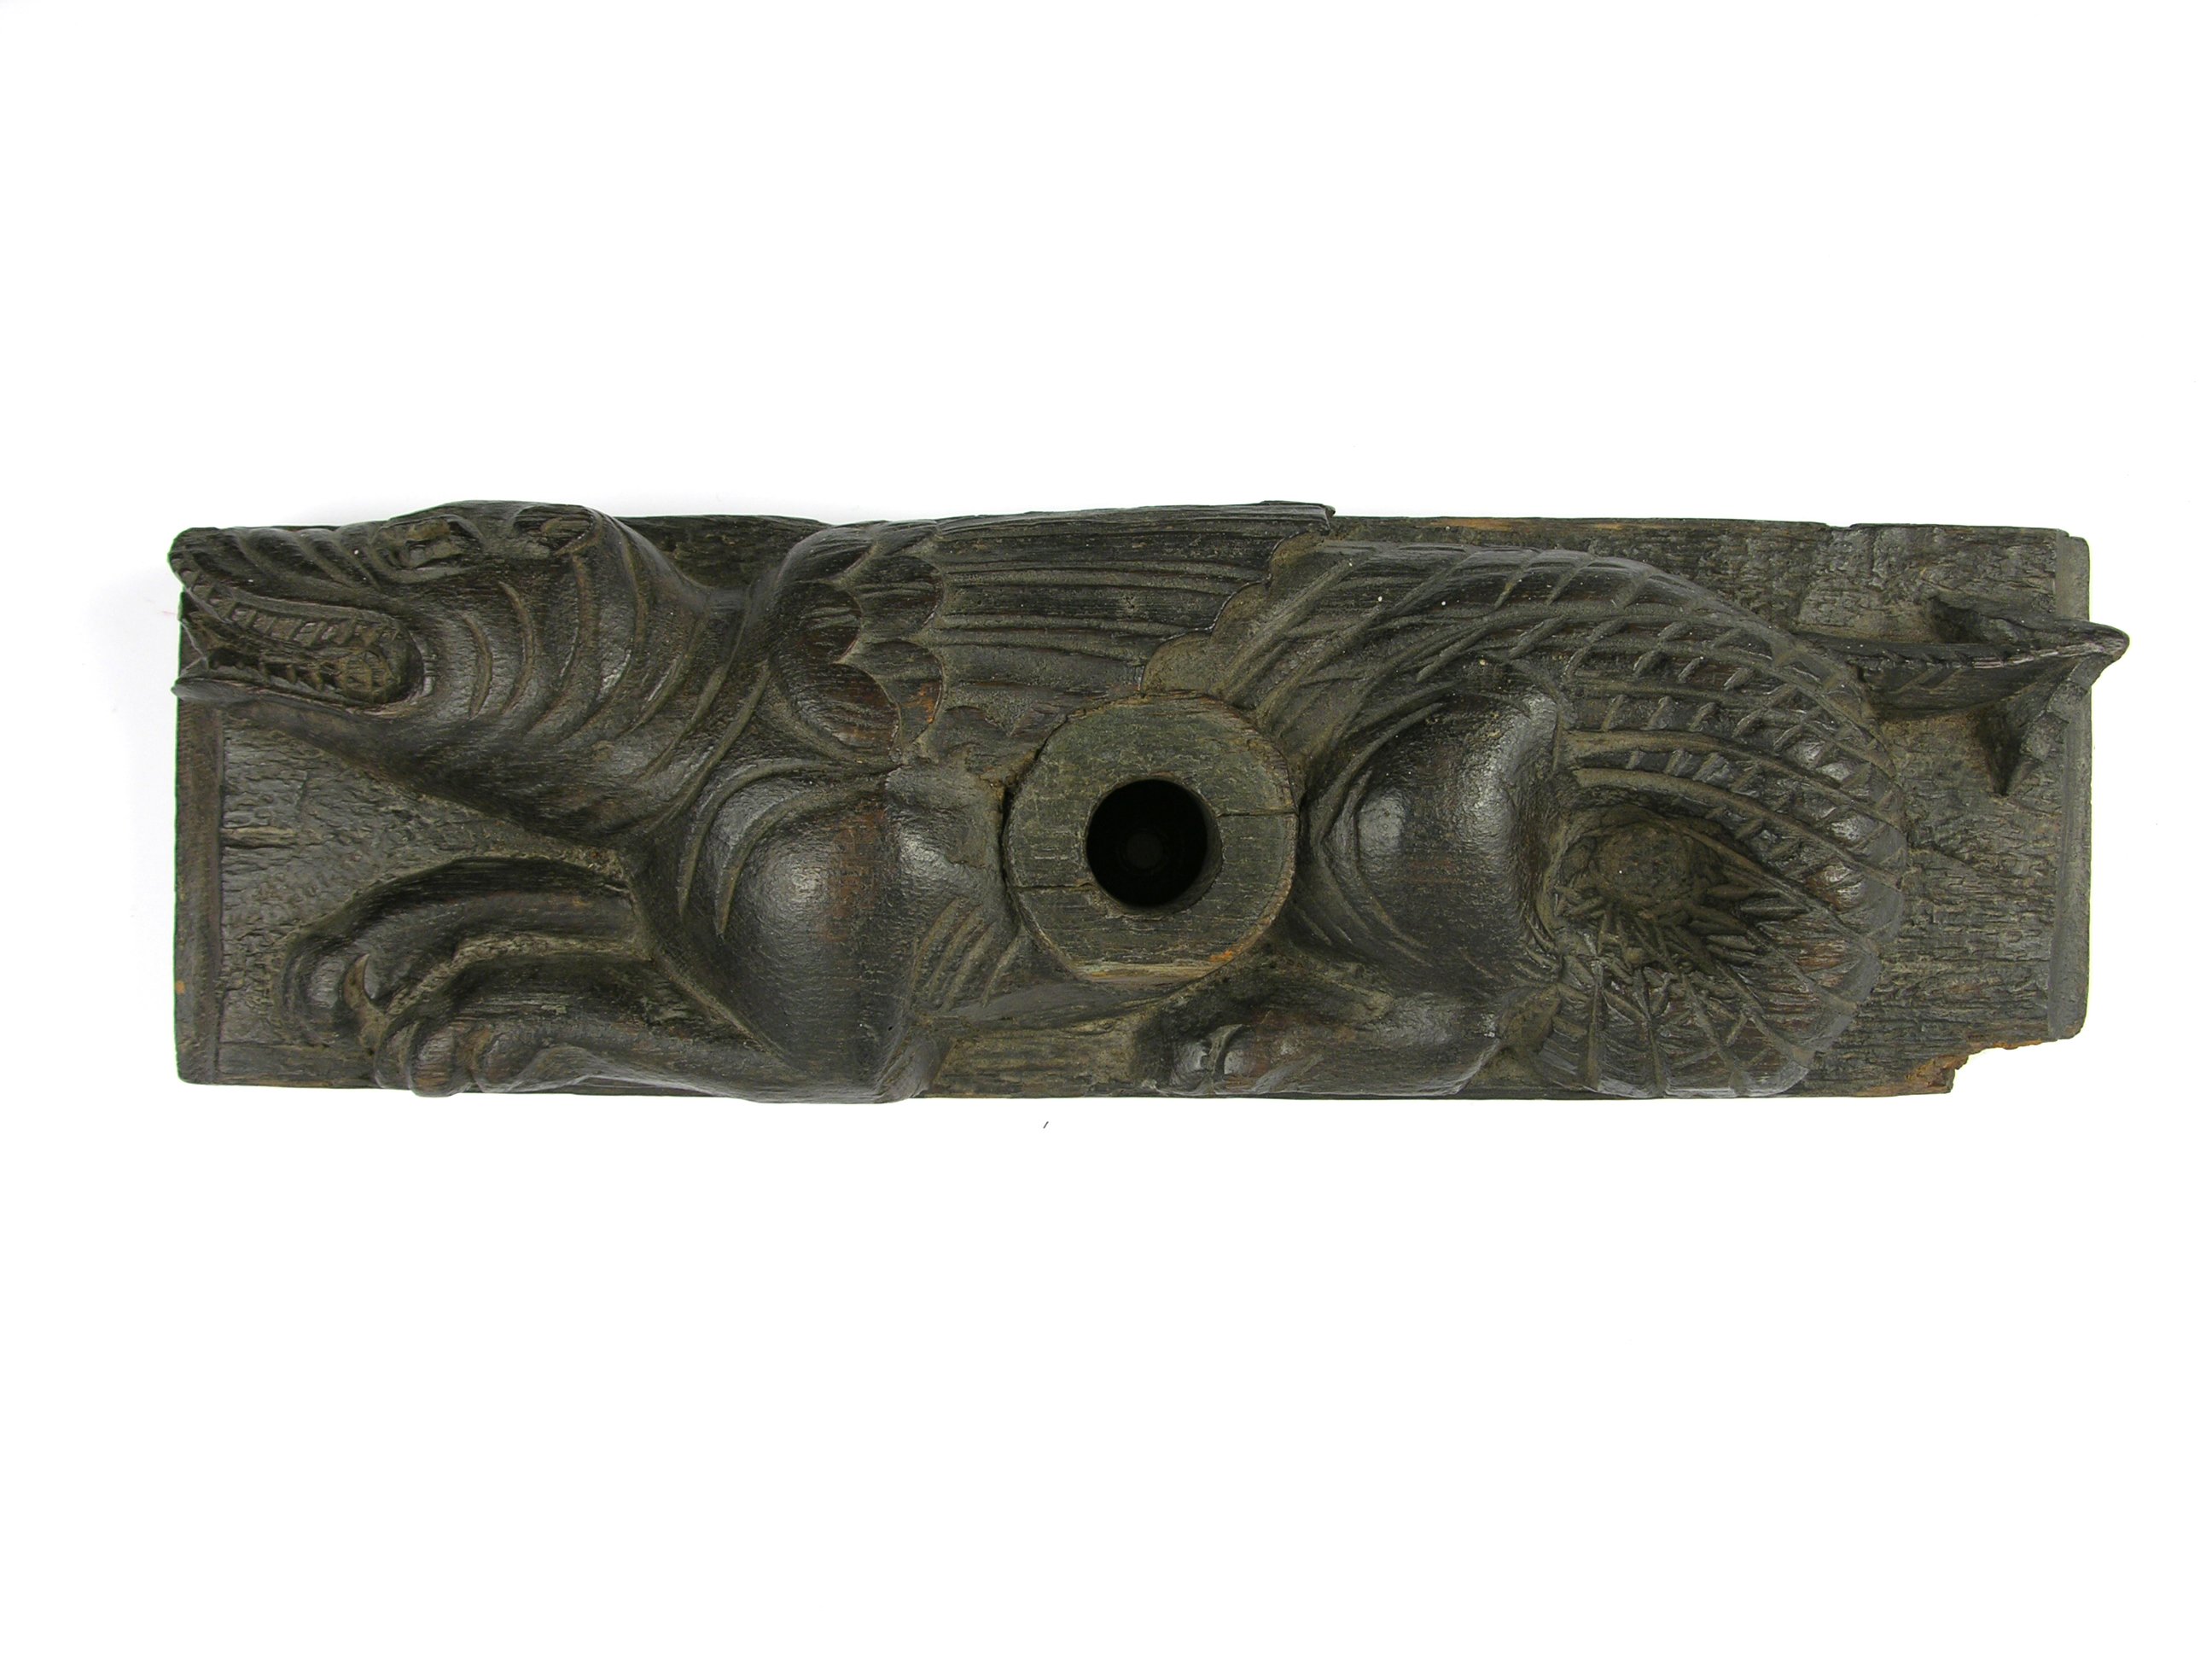 Fassriegel in Form eines Drachen (Historisches Museum der Pfalz - Speyer CC BY)